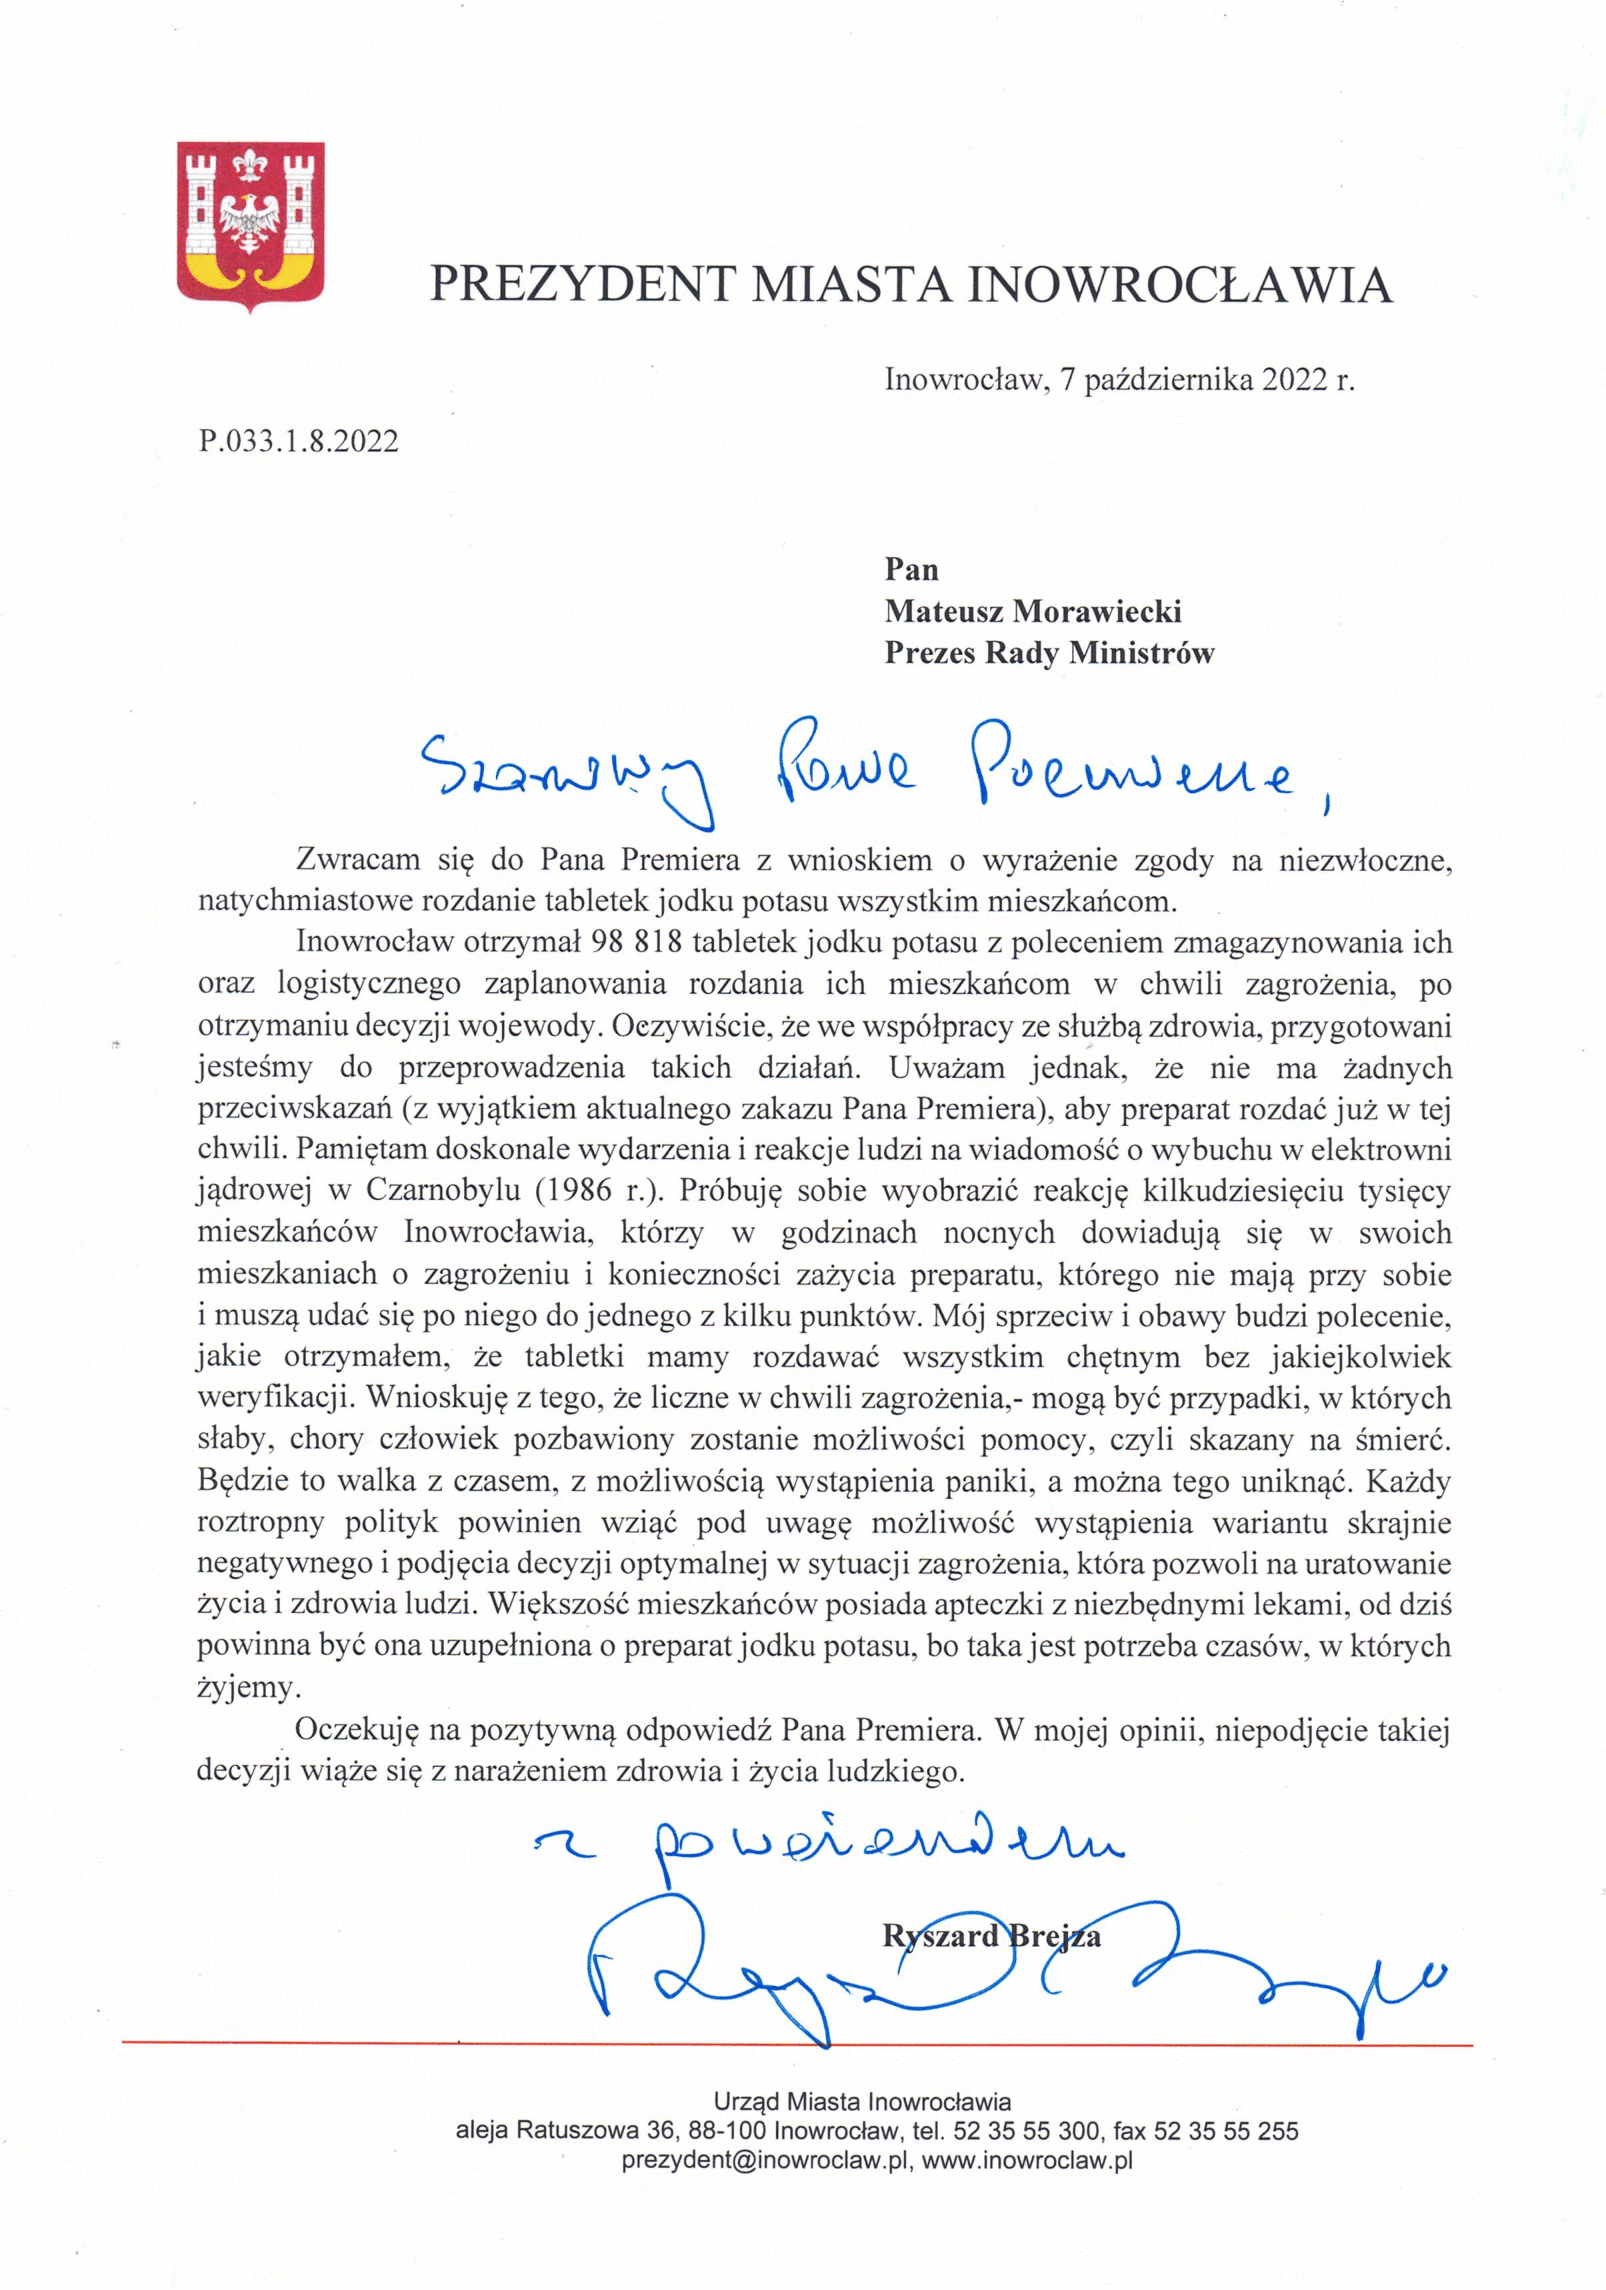 pismo do Premiera Mateusza Morawieckiego